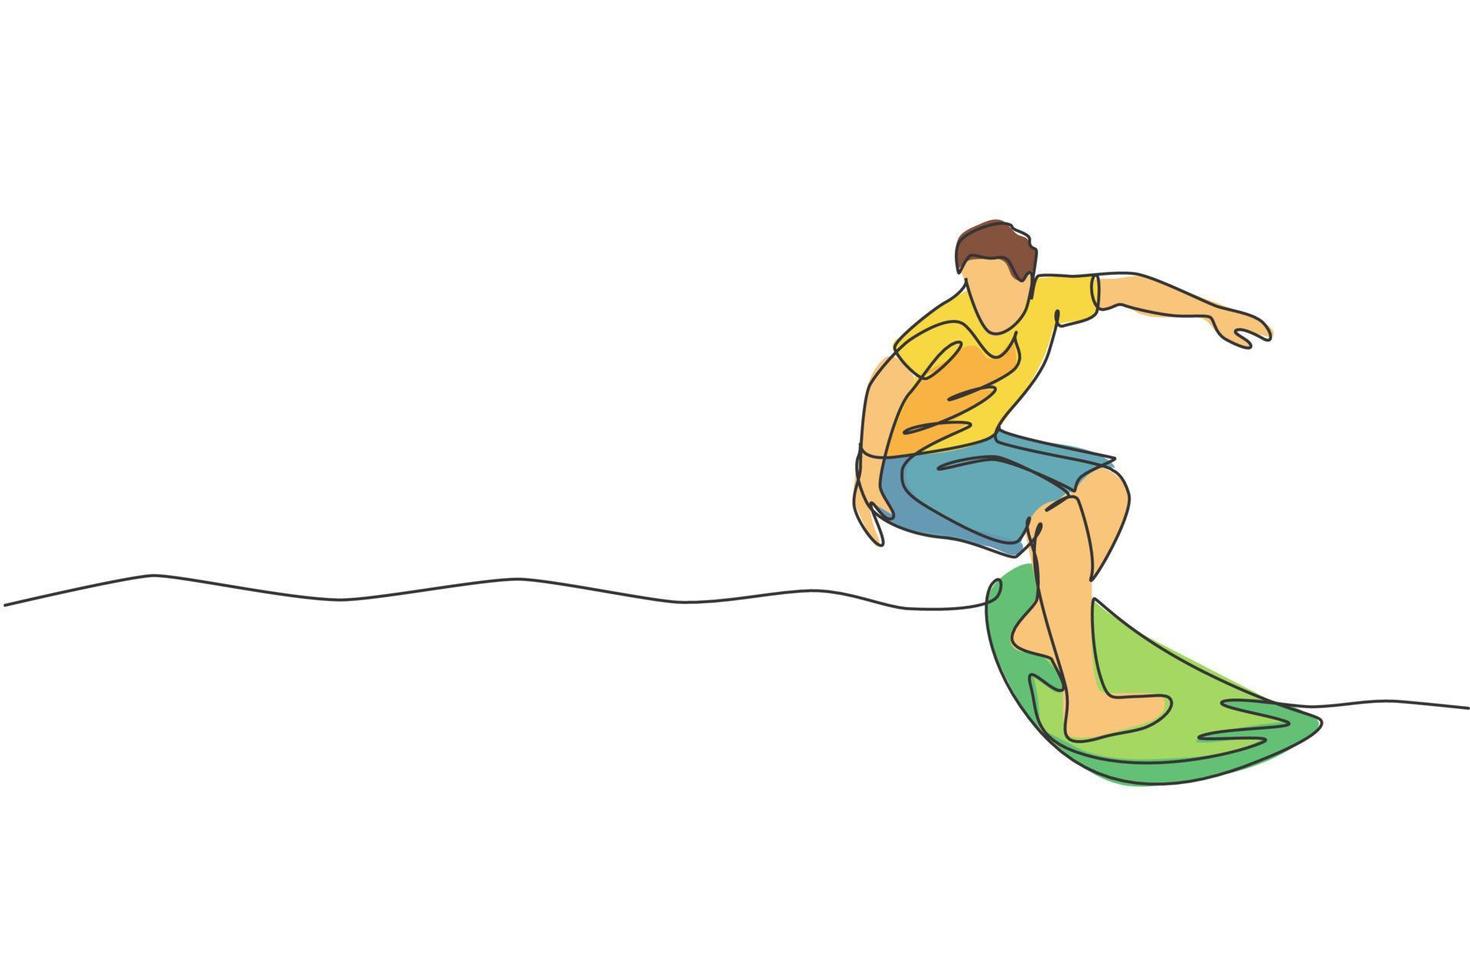 enda kontinuerlig linjeritning ung professionell surfare i aktion rider på vågorna på blått hav. extrem vattensport koncept. sommarsemester. trendiga en rad rita design vektorgrafisk illustration vektor